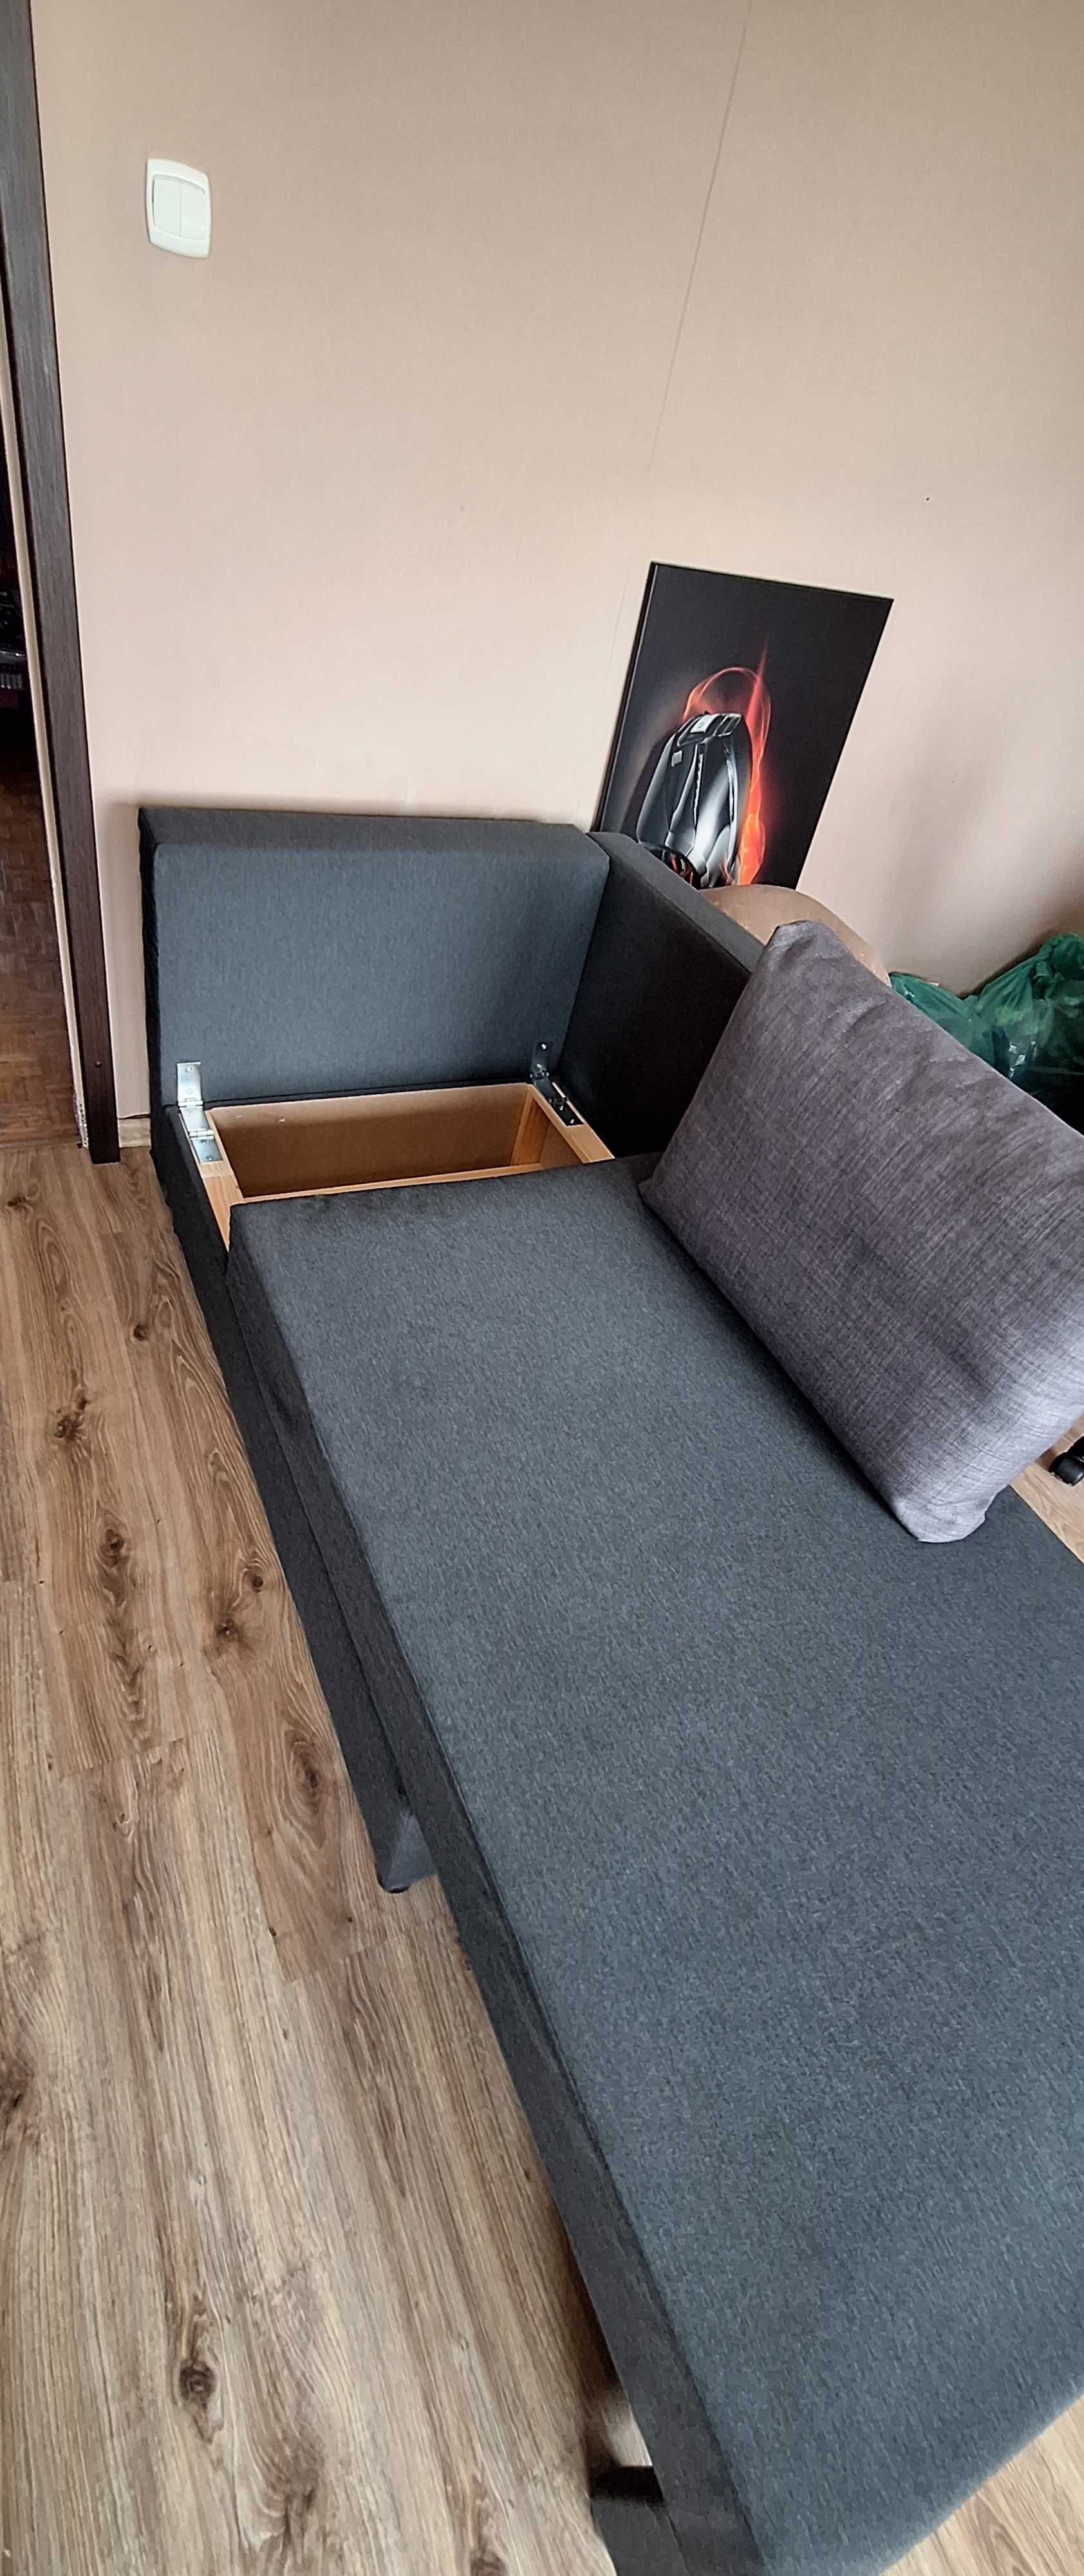 Łóżko jednosobowe BYGGET (IKEA)